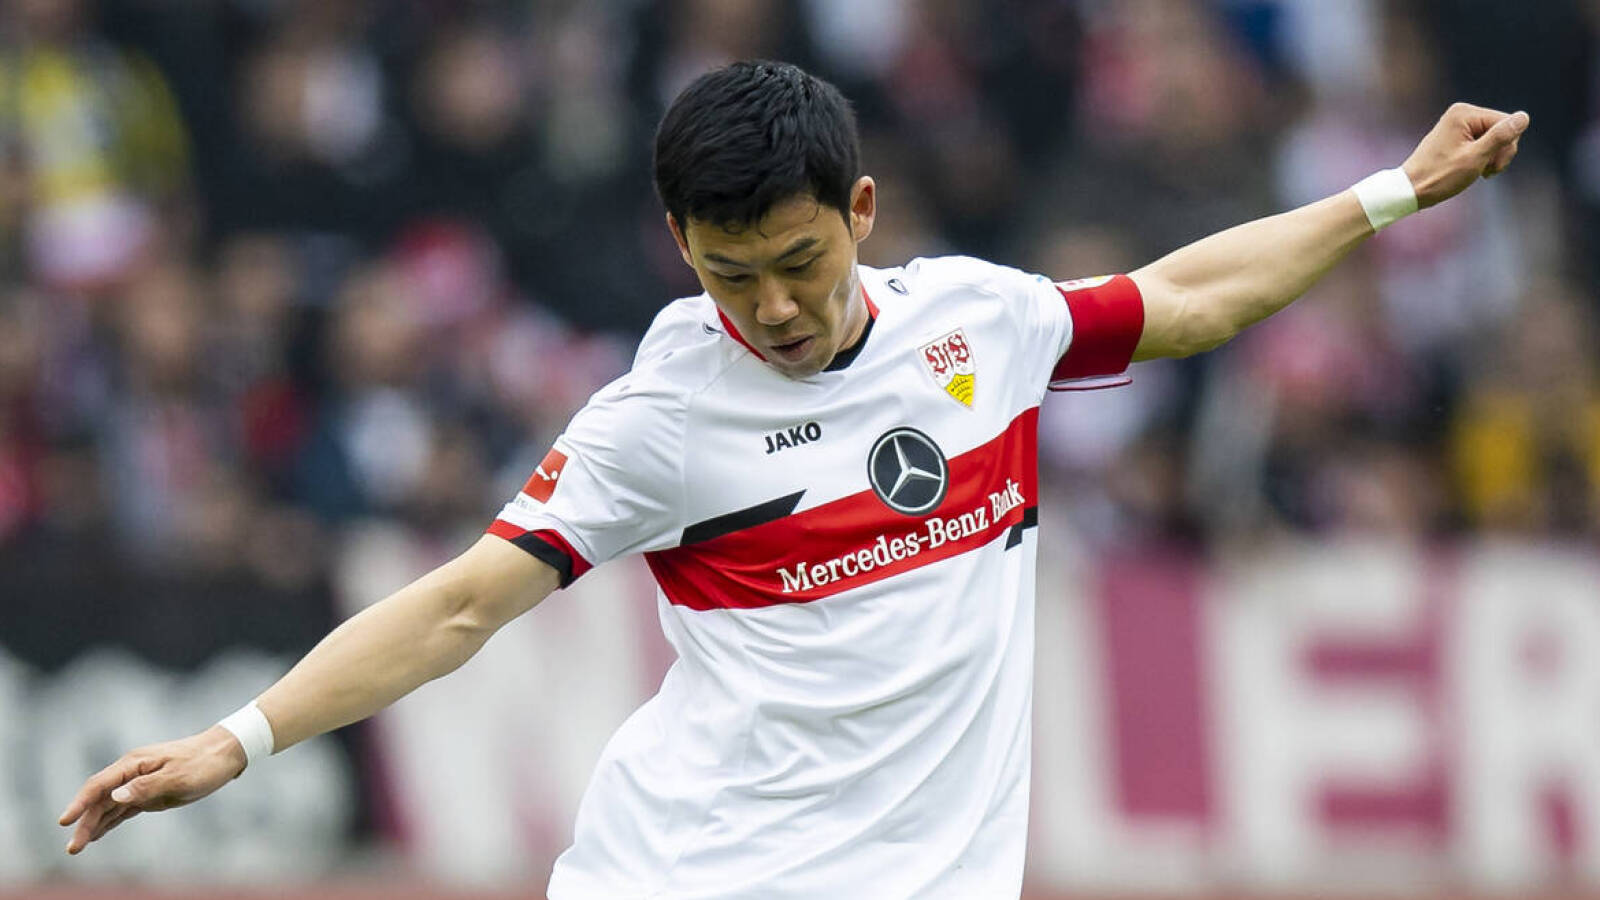 VfB Stuttgart scores dramatic 92nd-minute goal to avoid Bundesliga relegation